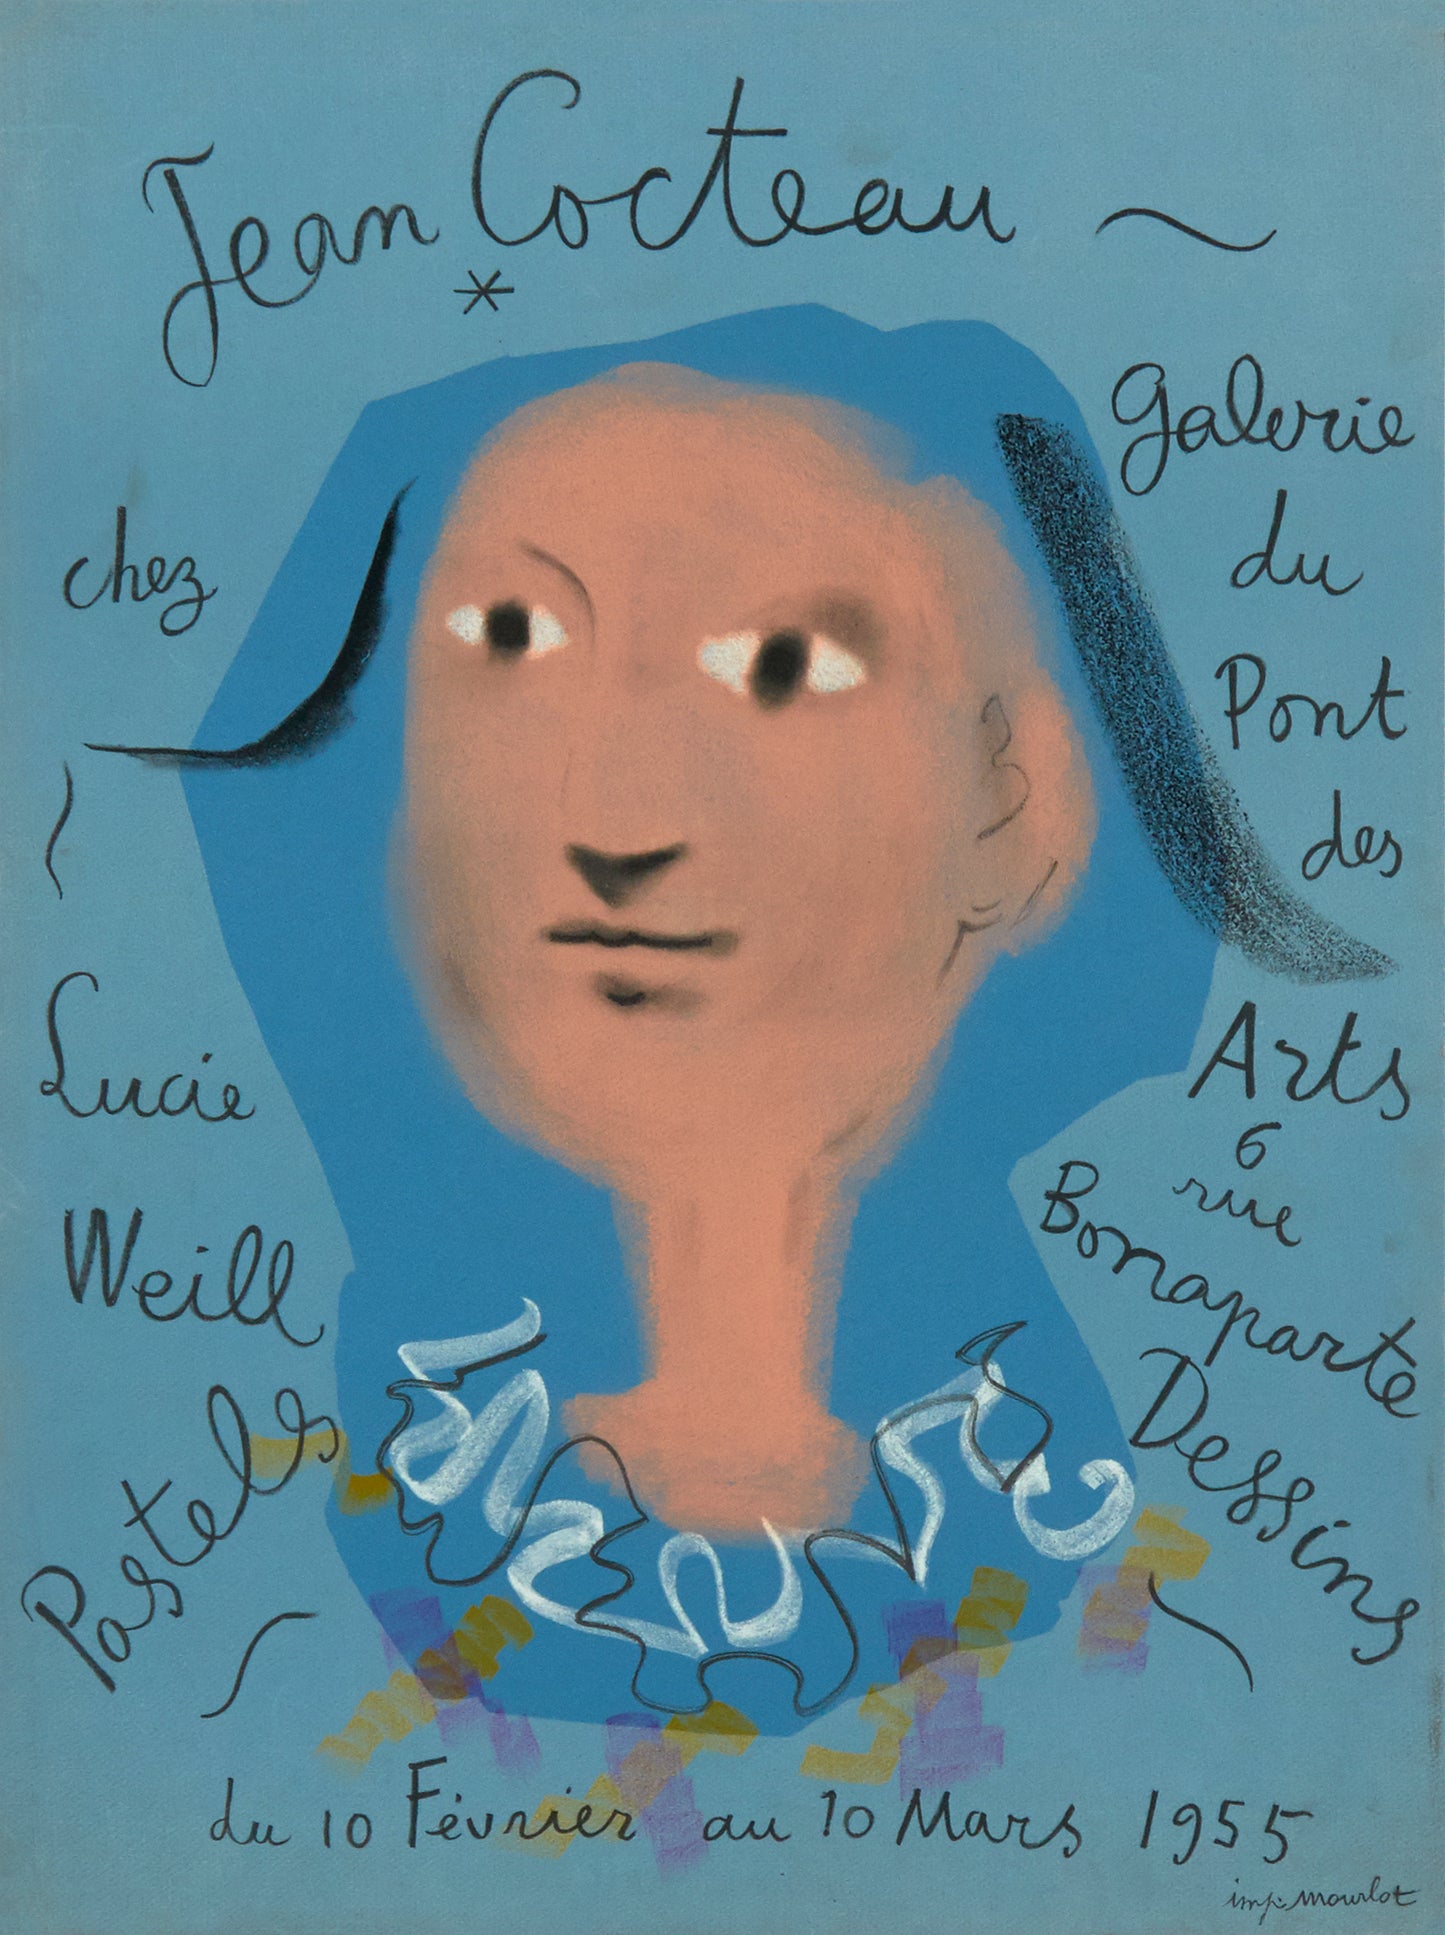 Pastels, Dessins, Galerie du Pont des Arts by Jean Cocteau, 1955 - Mourlot Editions - Fine_Art - Poster - Lithograph - Wall Art - Vintage - Prints - Original